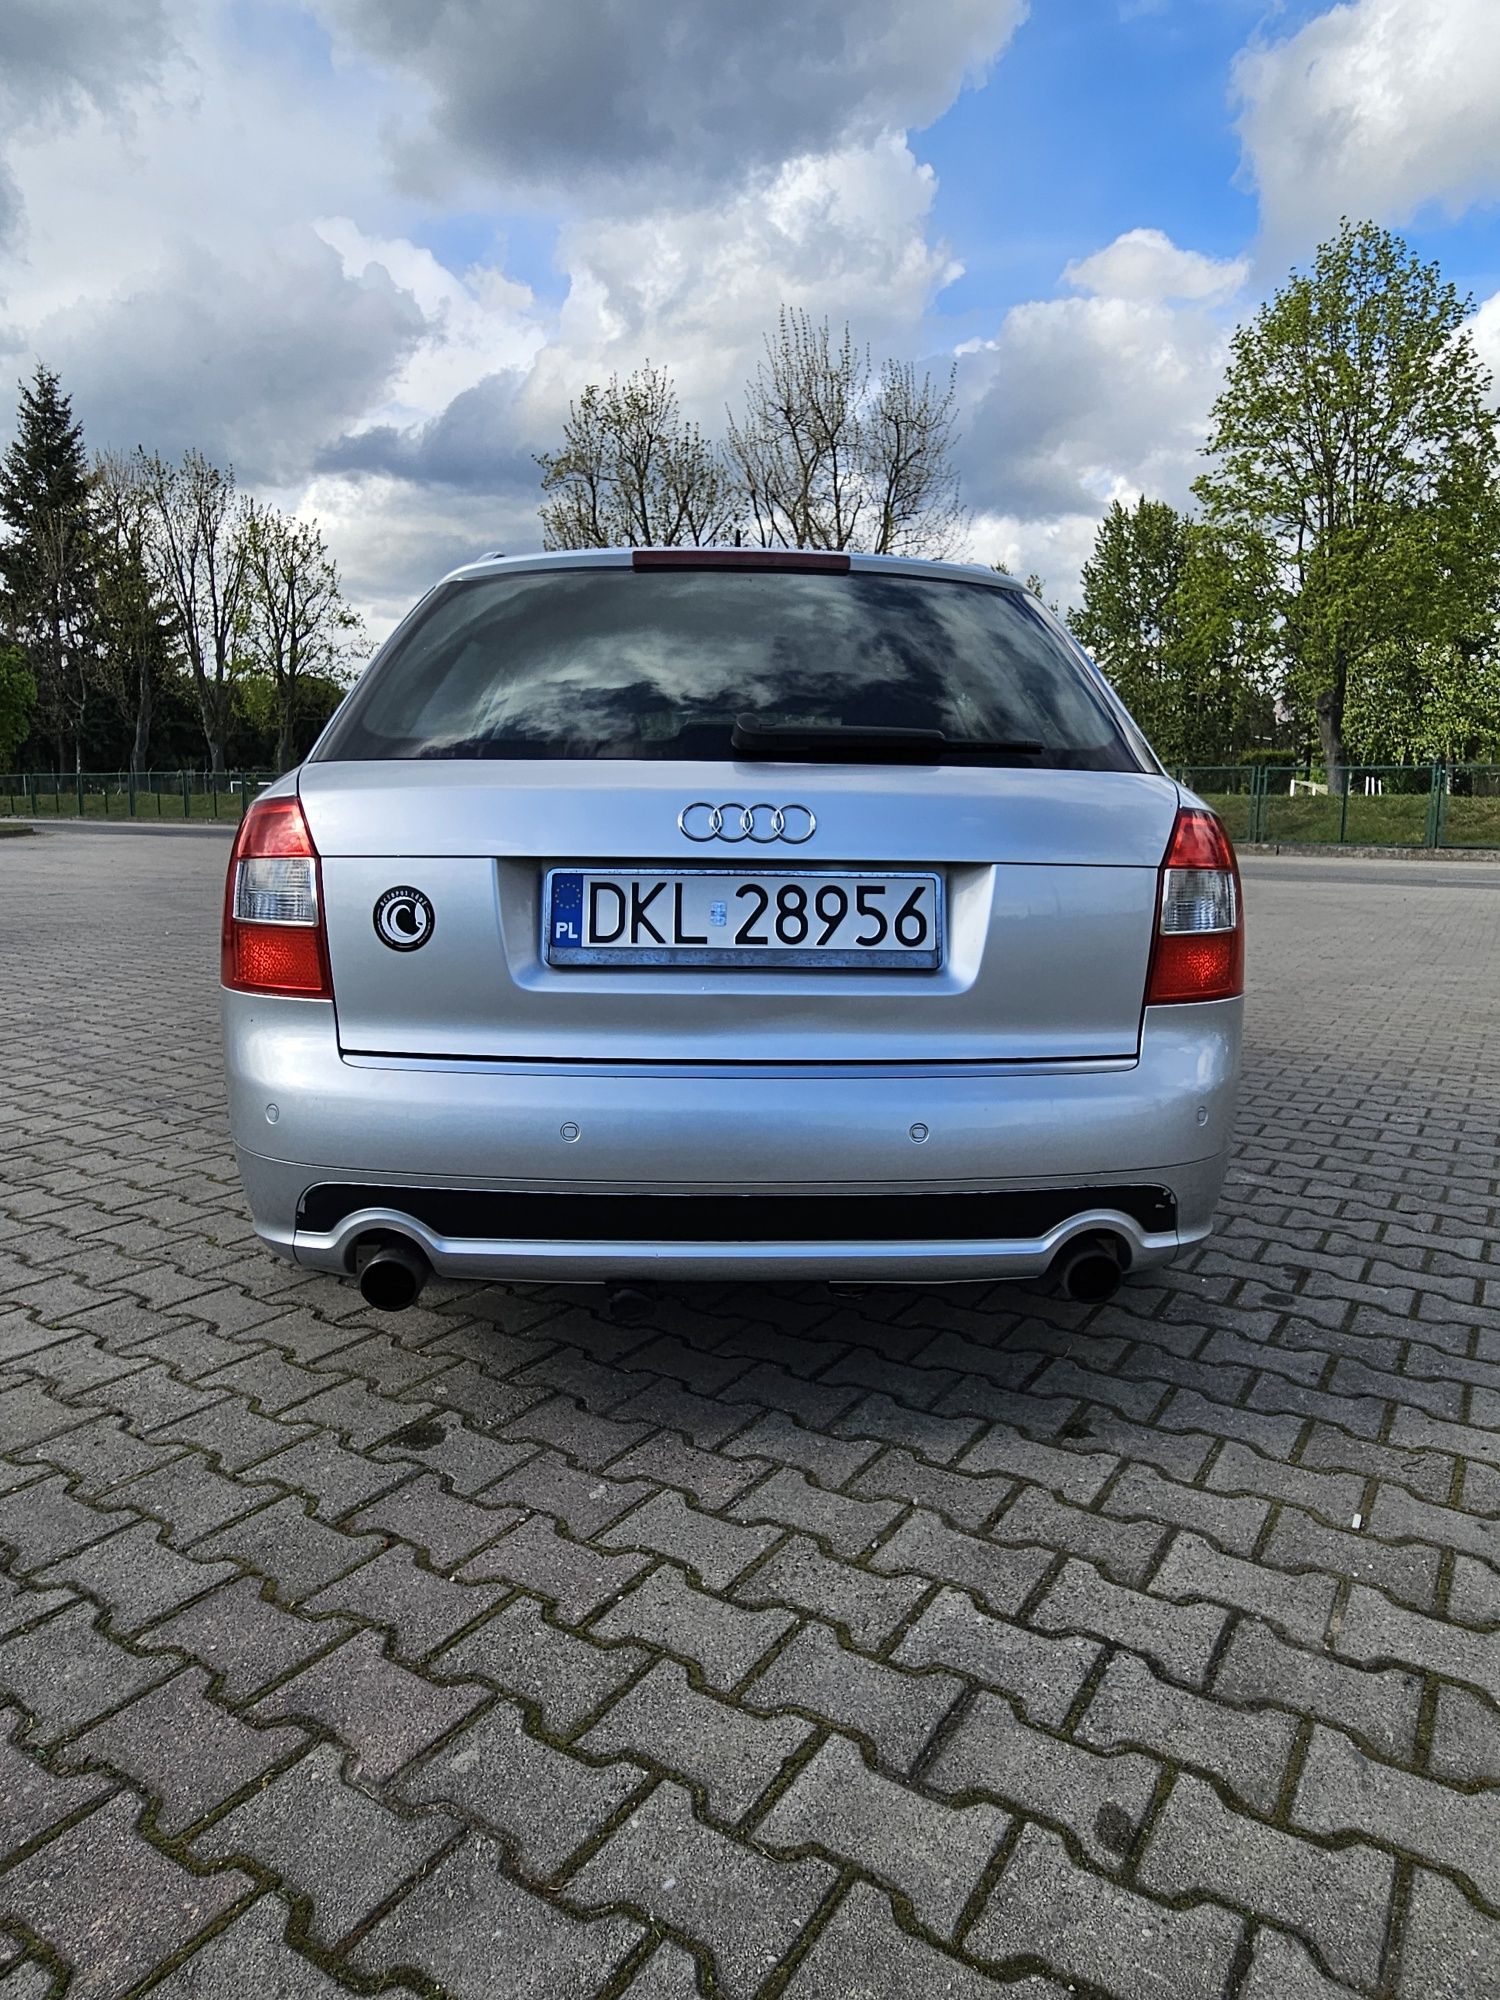 Audi 1.8T quattro